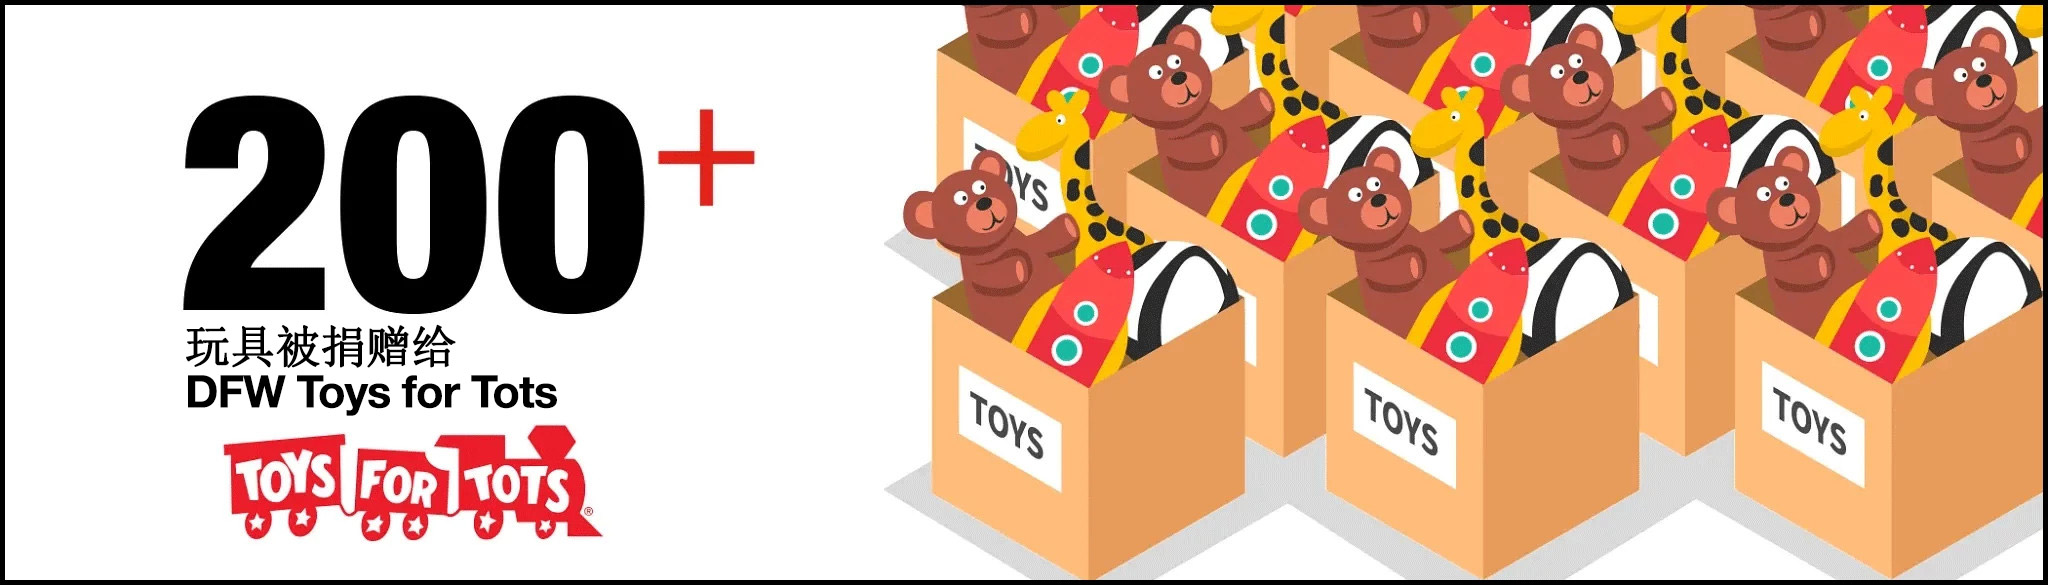 Flowserve员工向Dallas Fort Worth Toys for Tots捐赠了超过200件玩具